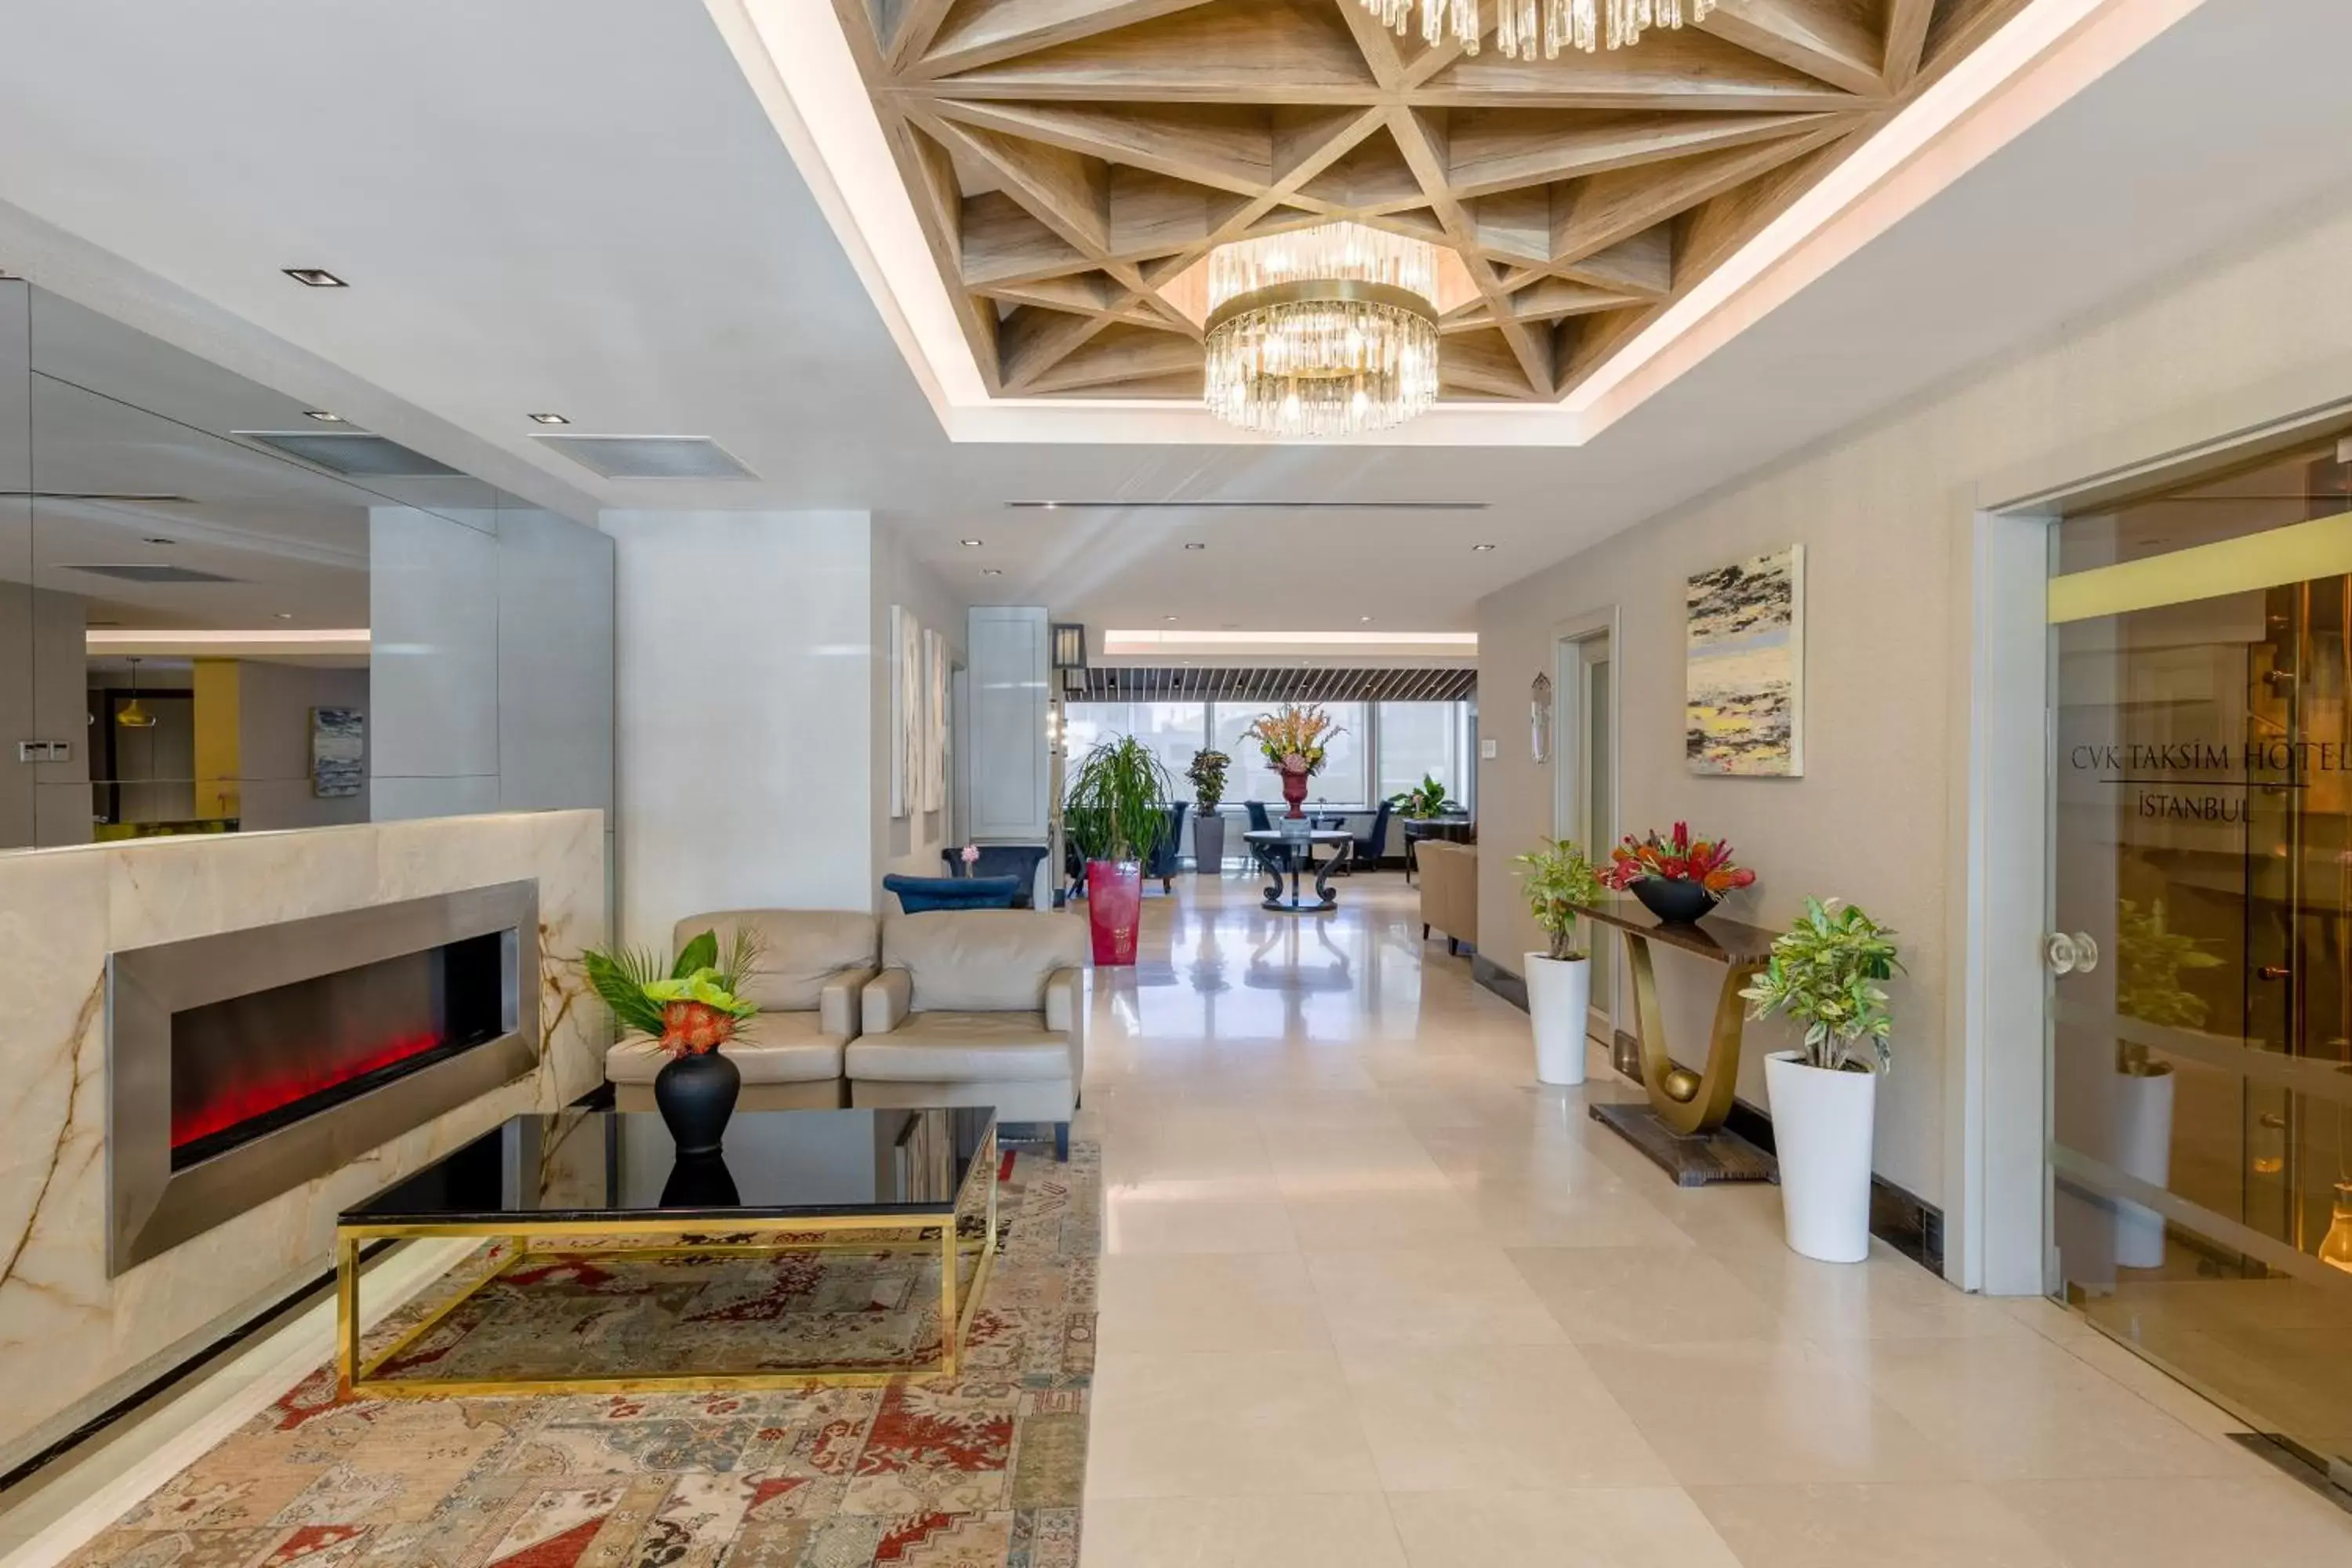 Lobby or reception, Lobby/Reception in CVK Taksim Hotel Istanbul